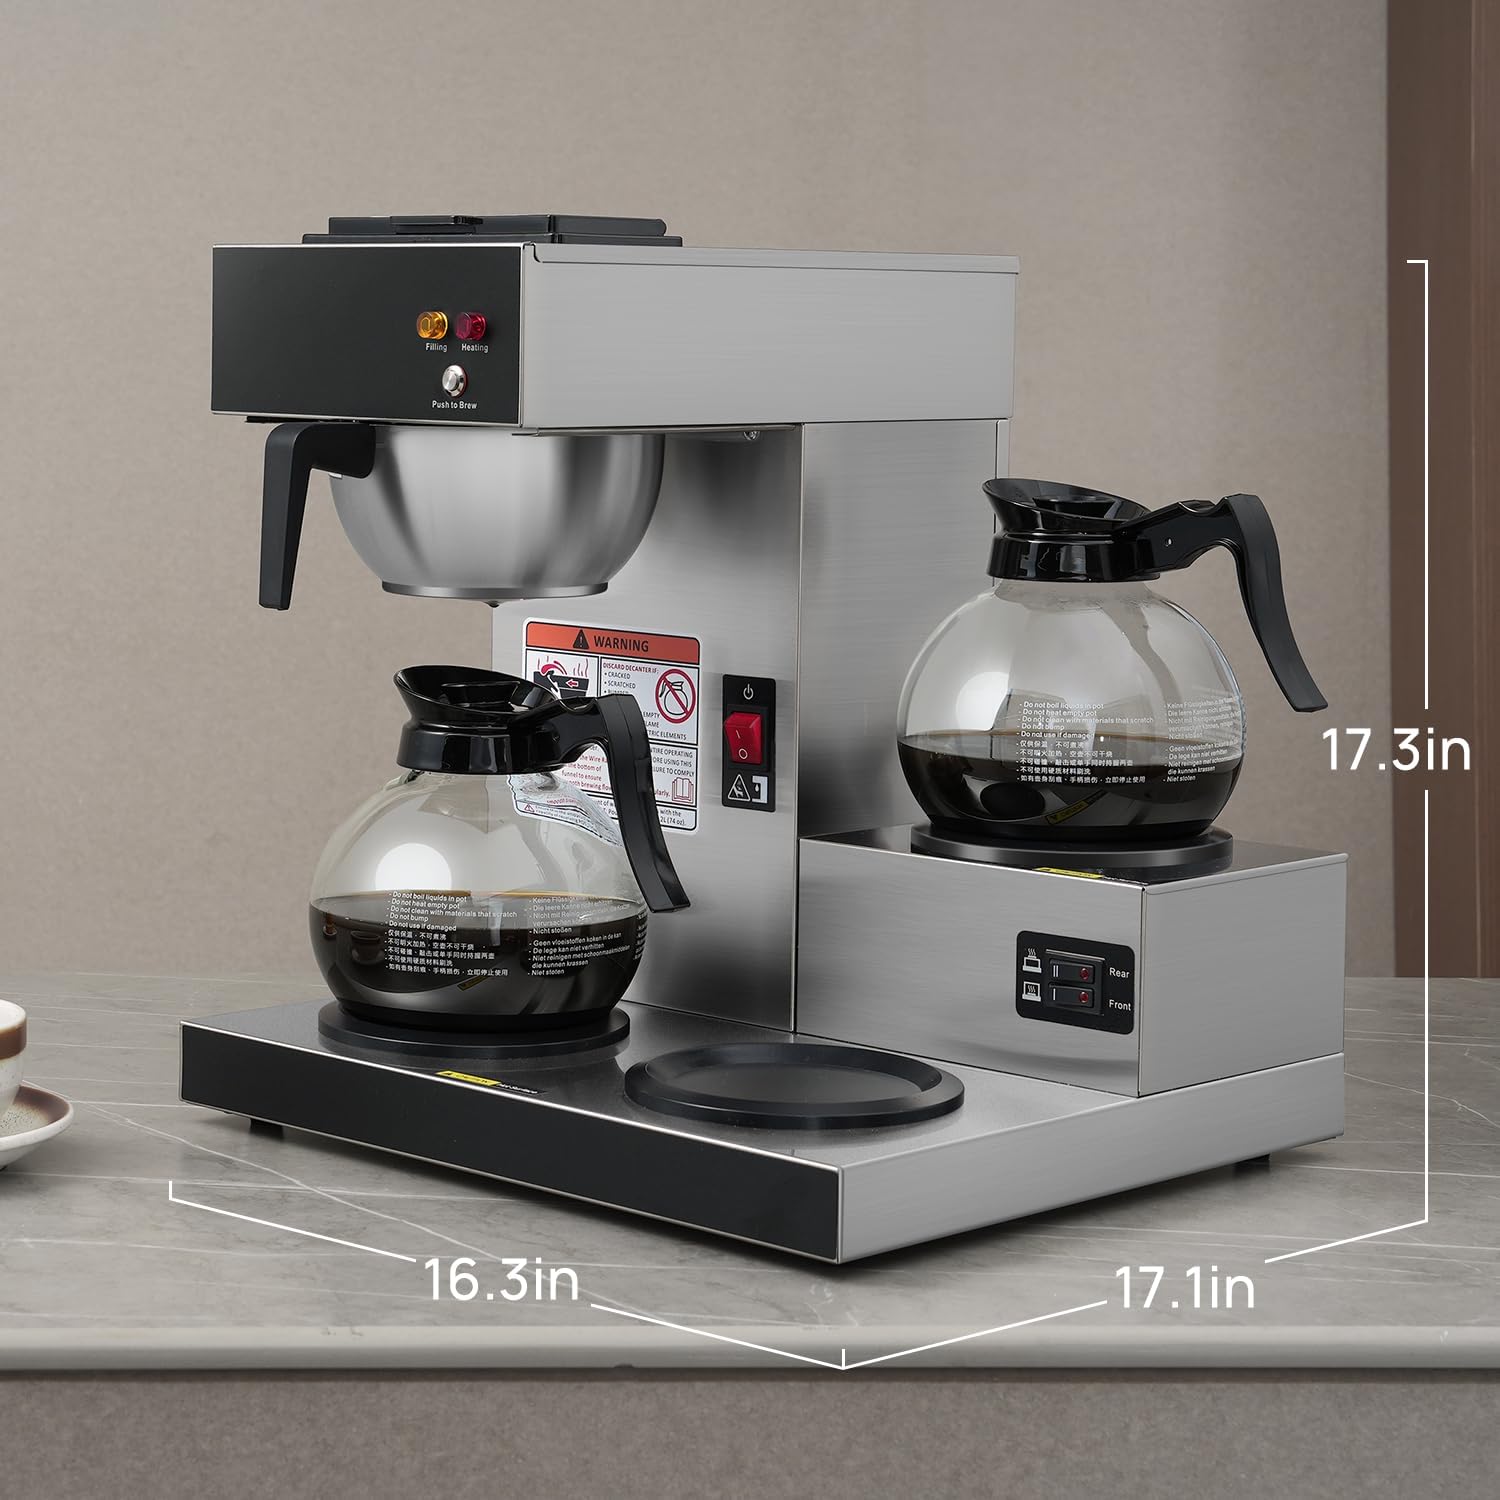 قهوه ساز قطره ای 12 فنجان مدل SYBO 12-Cup 3GA - ارسال 20 الی 25 روز کاری